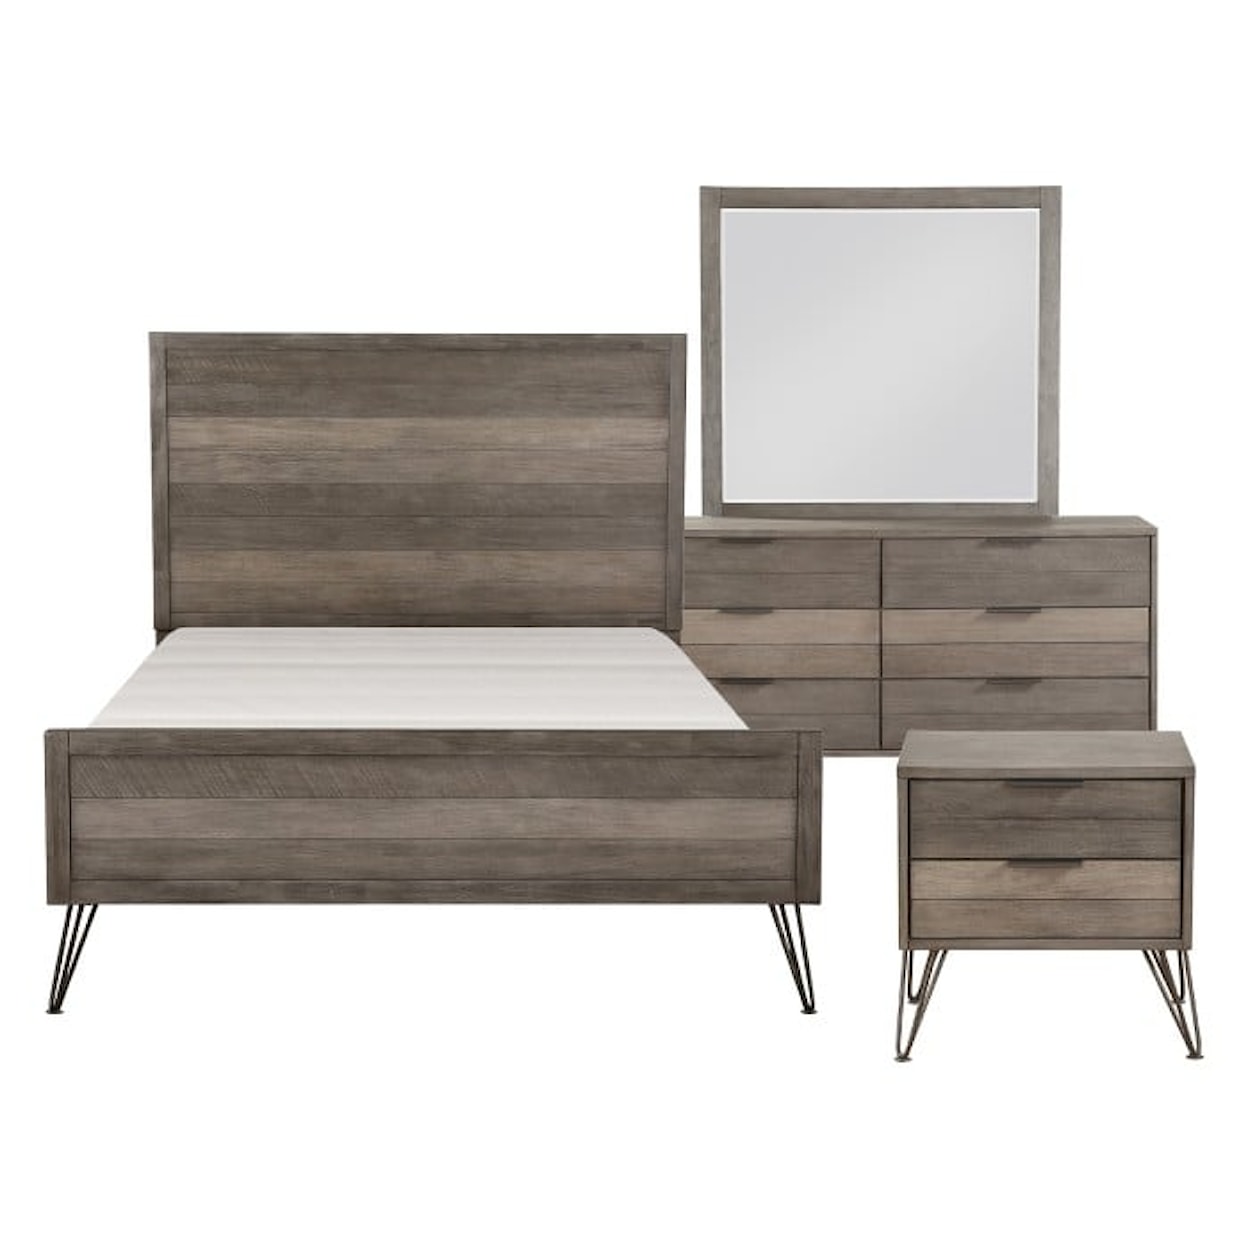 Homelegance Furniture Urbanite 4-Piece Queen Bedroom Set